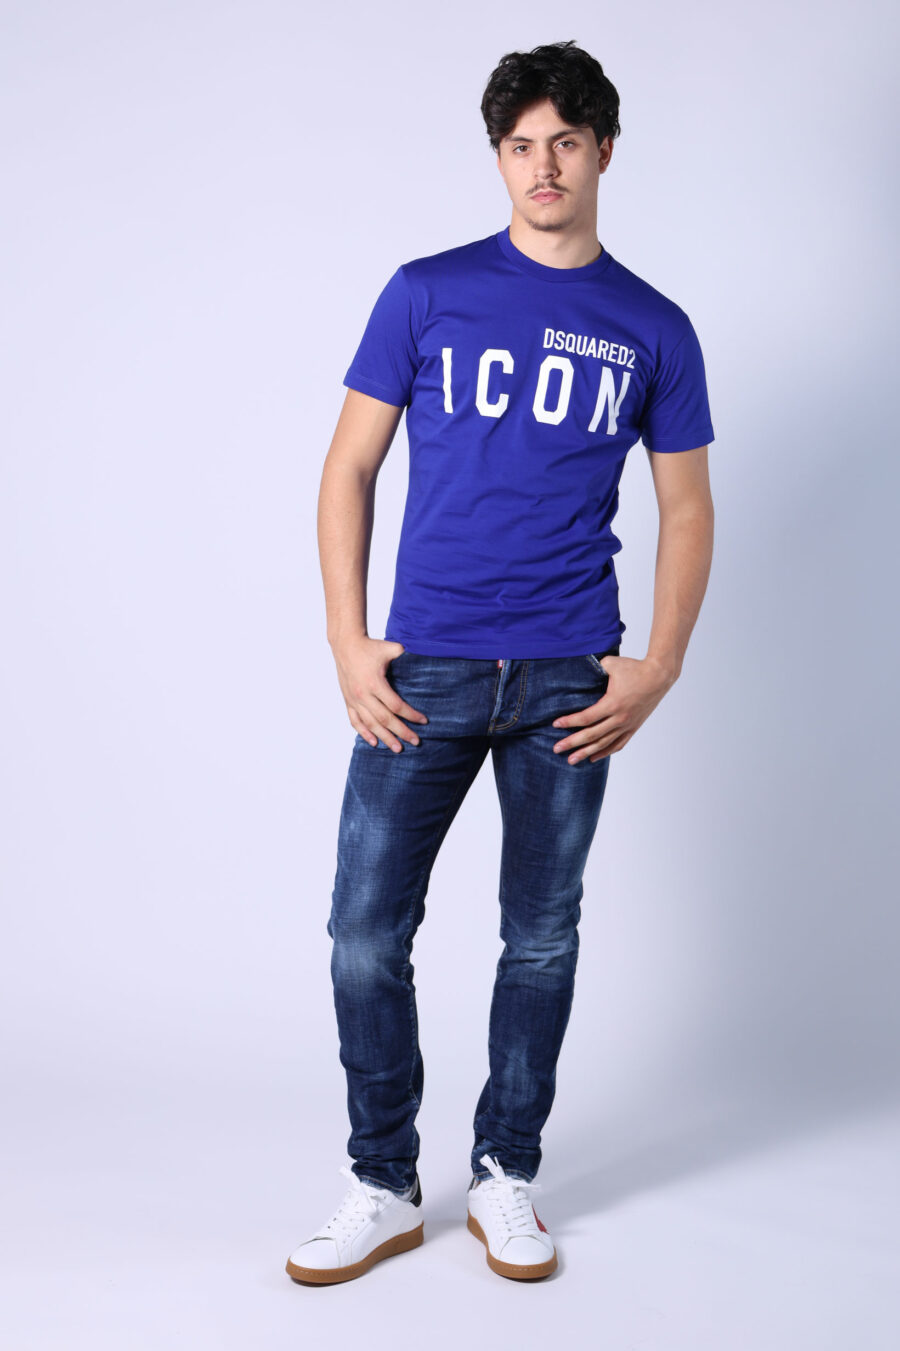 T-shirt azul elétrico com maxilogo "ícone" branco - Untitled Catalog 05398